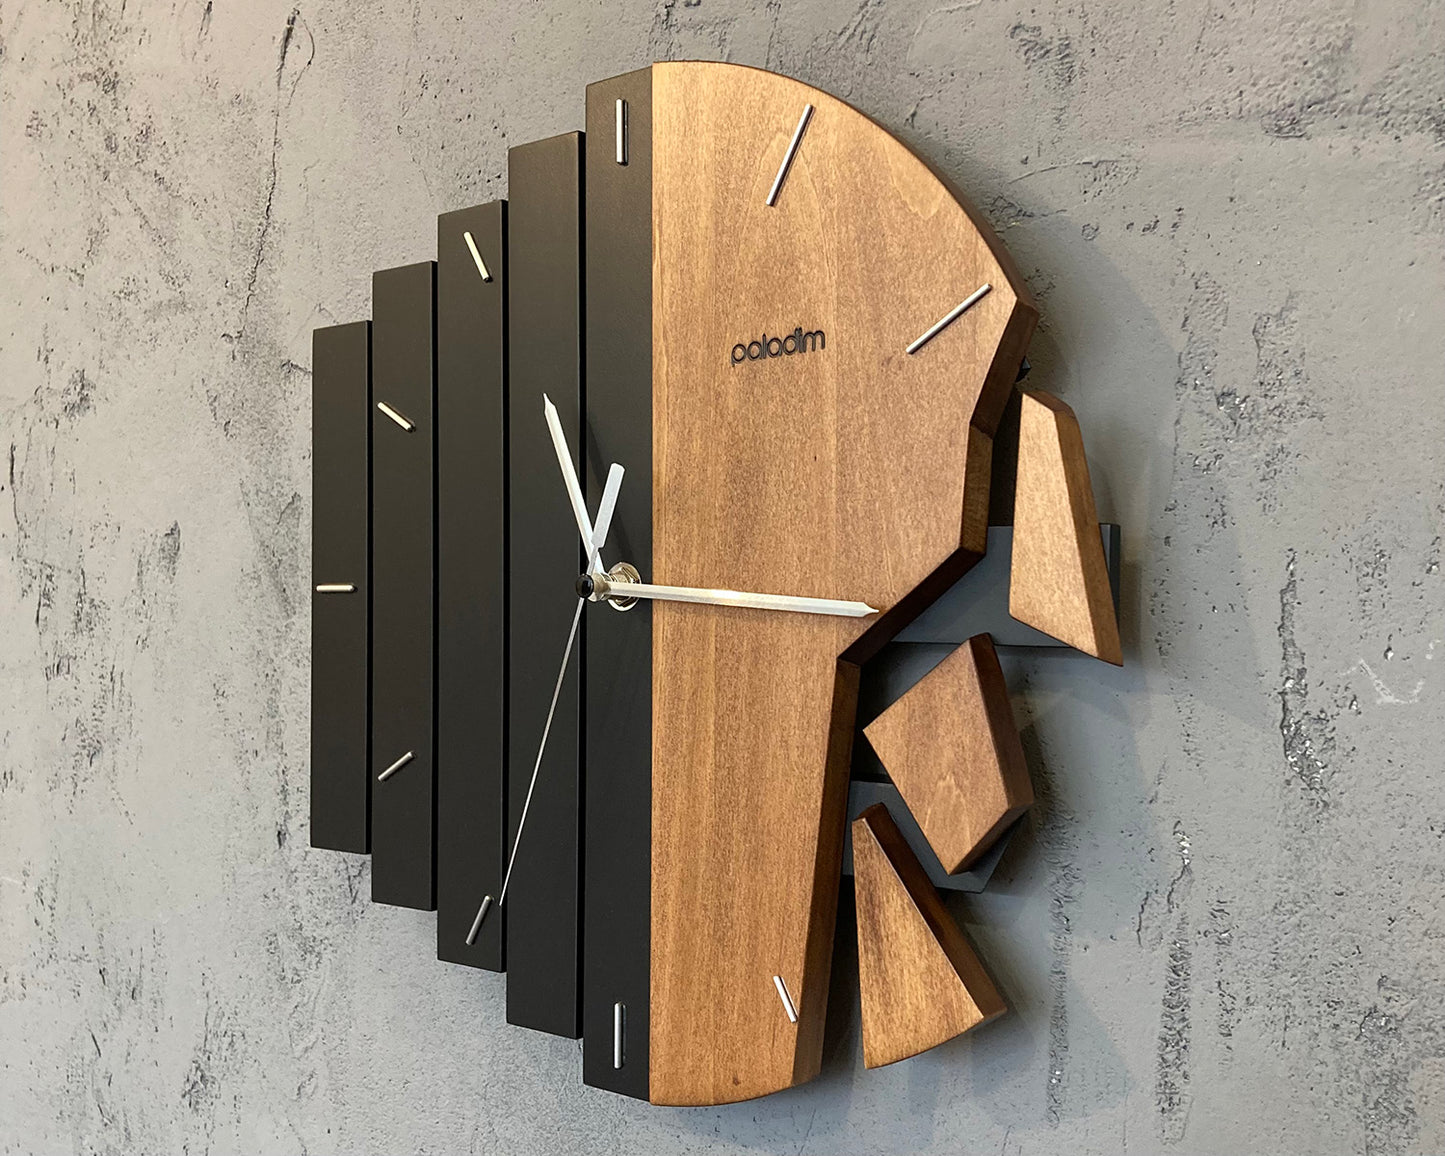 MIXORED abstract wall clock